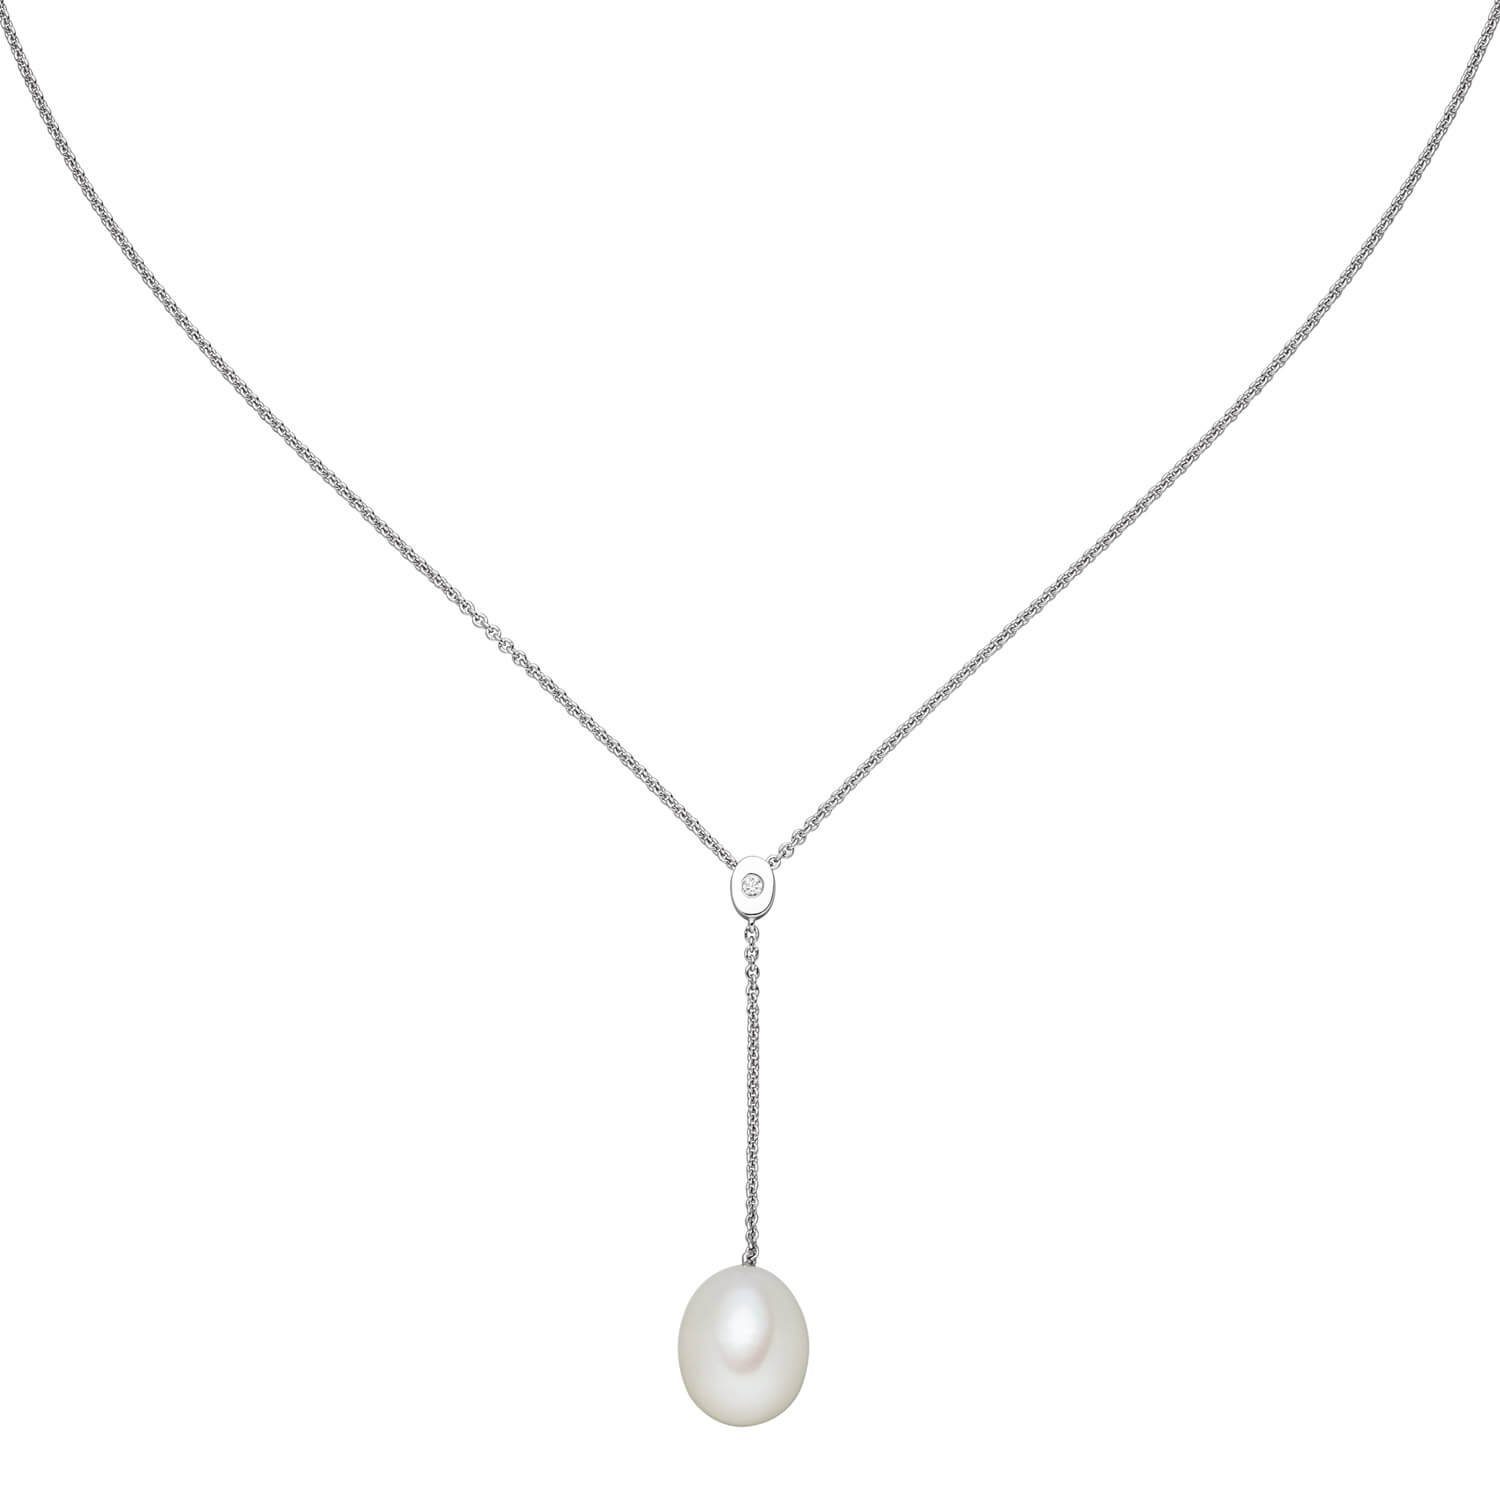 Schmuck Krone Silberkette Y-Kette Collier mit Süßwasser Perle creme-weiß Zirkonia 925 Silber 42-45cm Damen